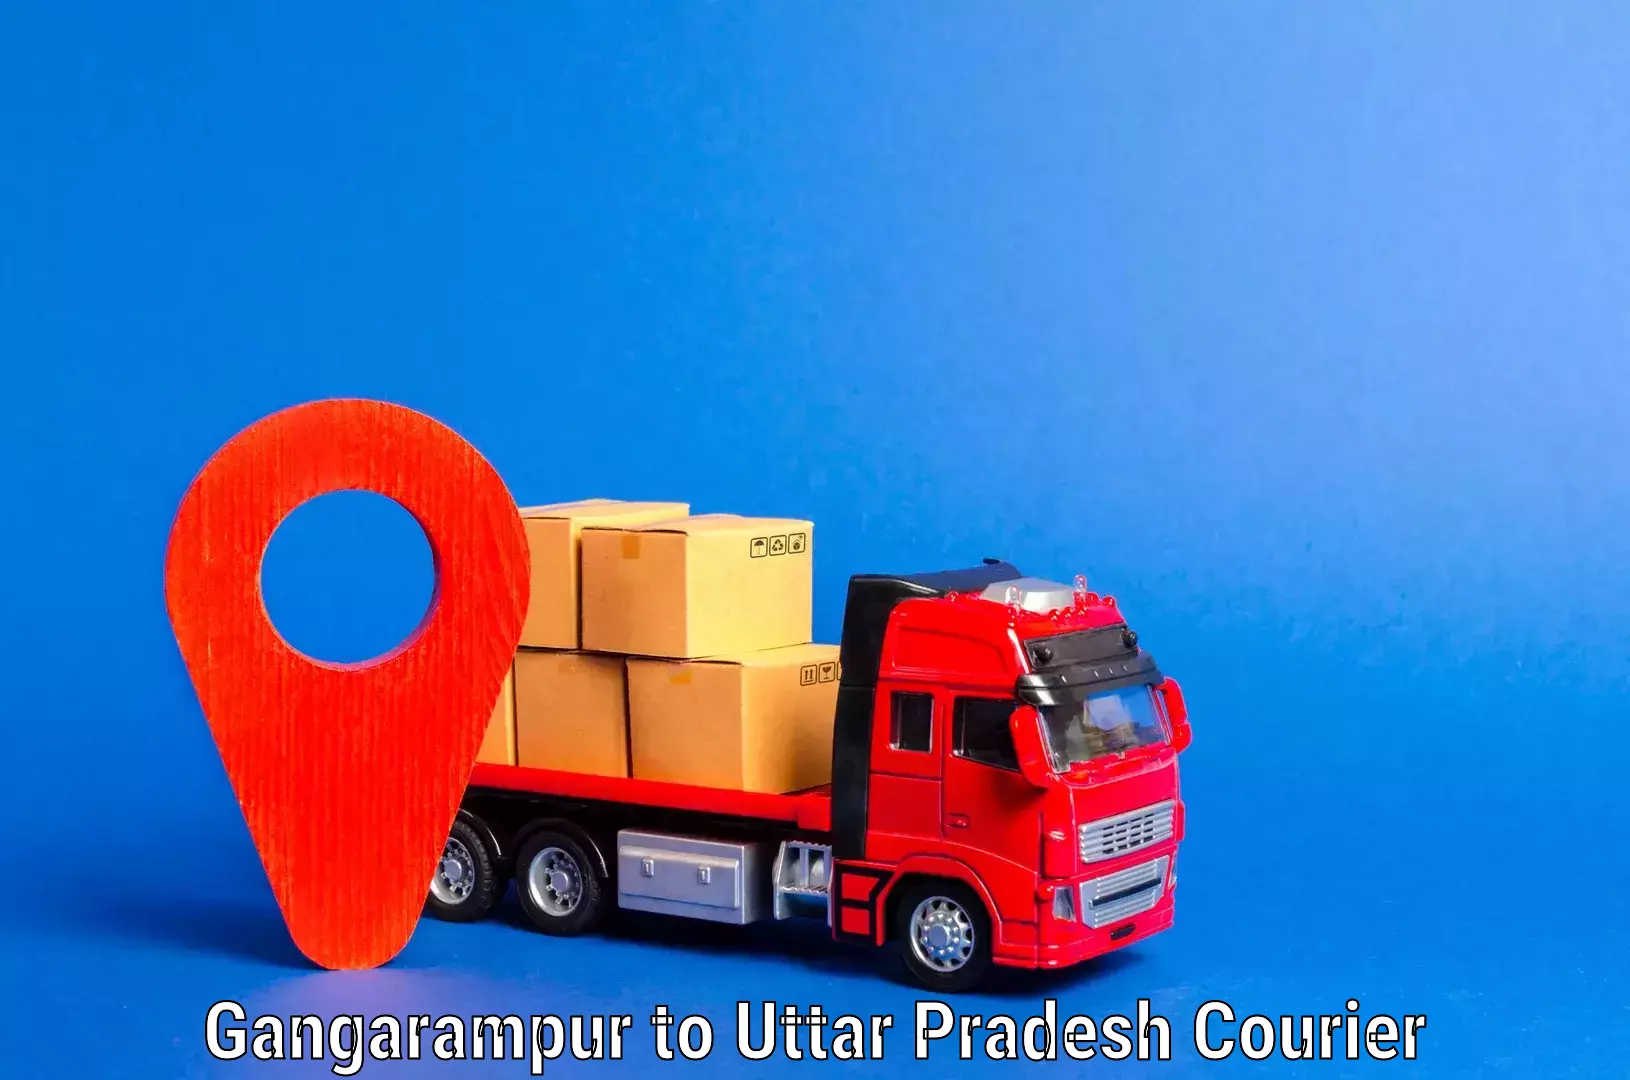 Efficient relocation services Gangarampur to Uttar Pradesh